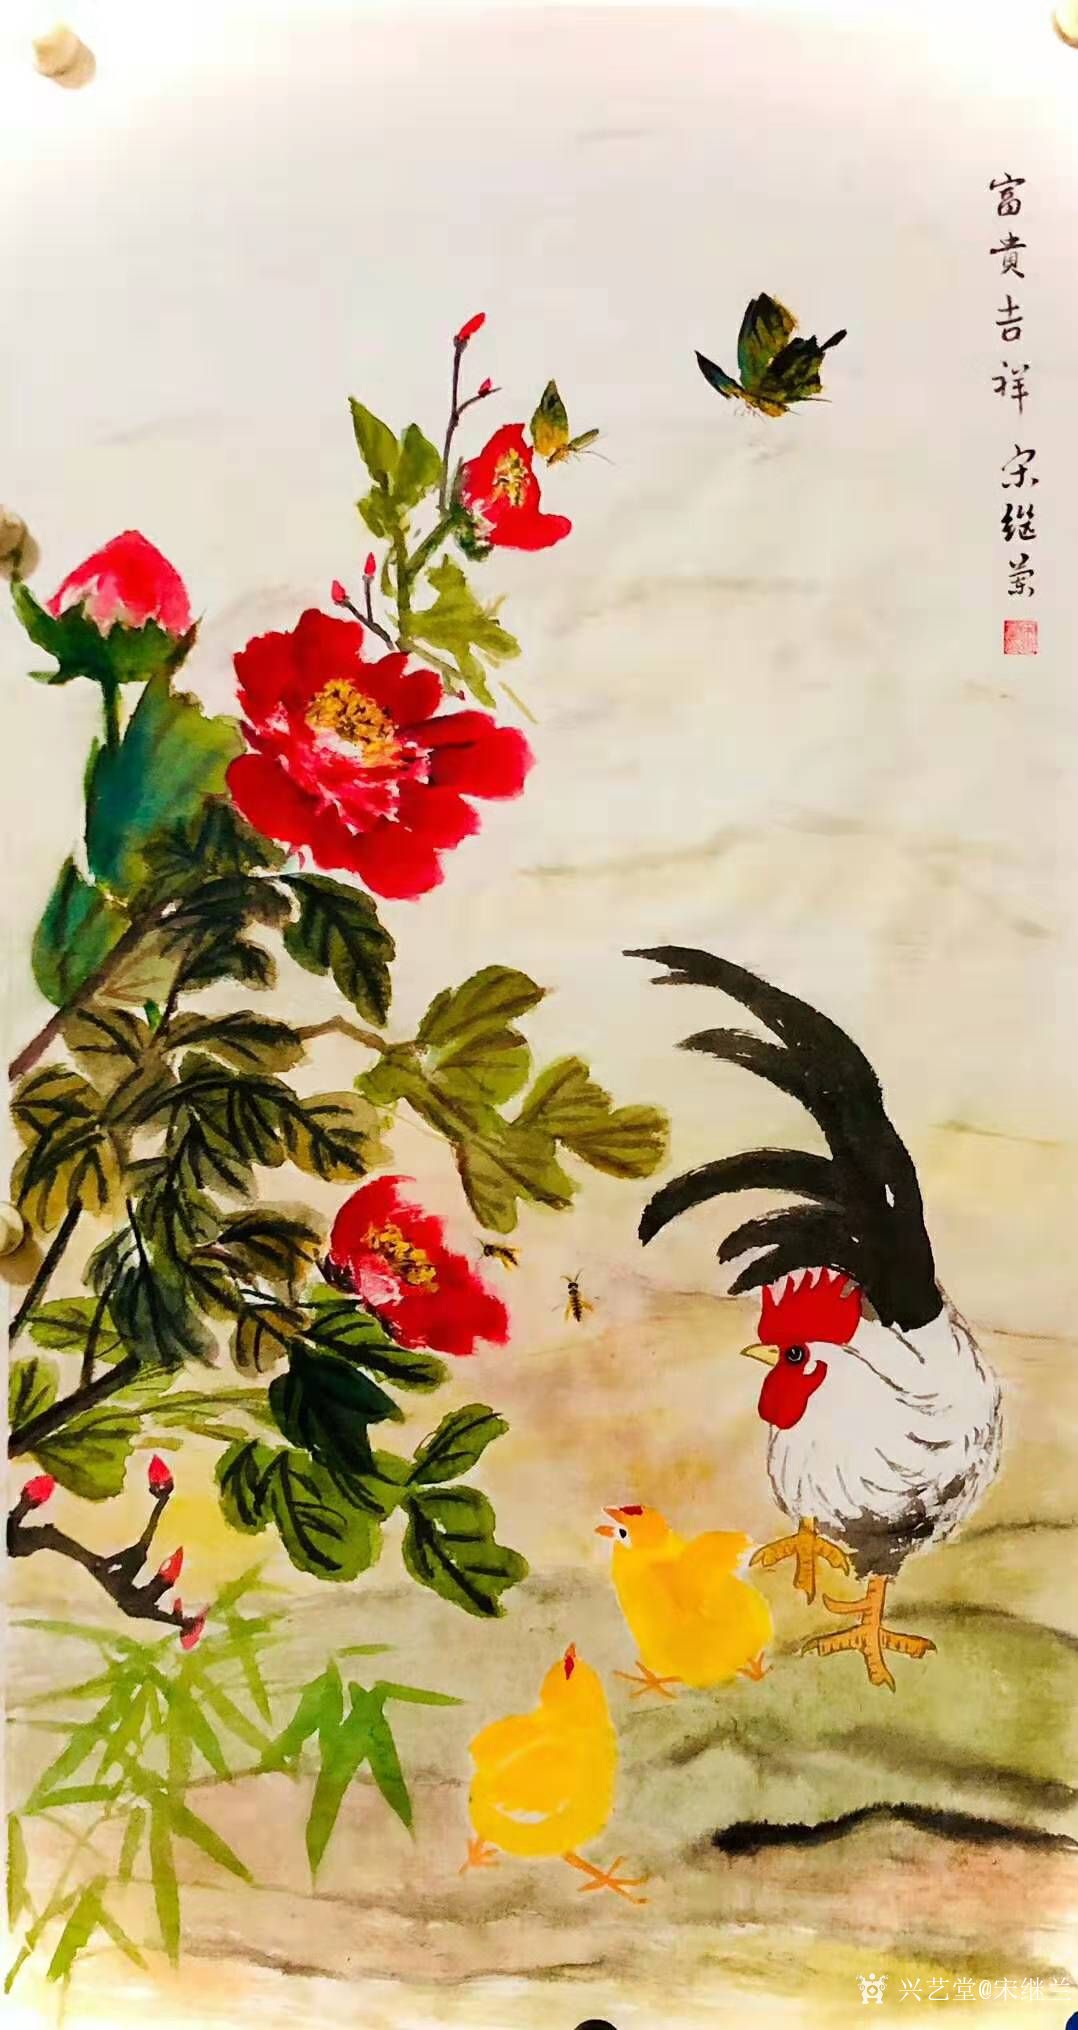 宋继兰日记-国画公鸡《吉利图》尺寸四尺竖幅168x38cm,乙亥年冬月新